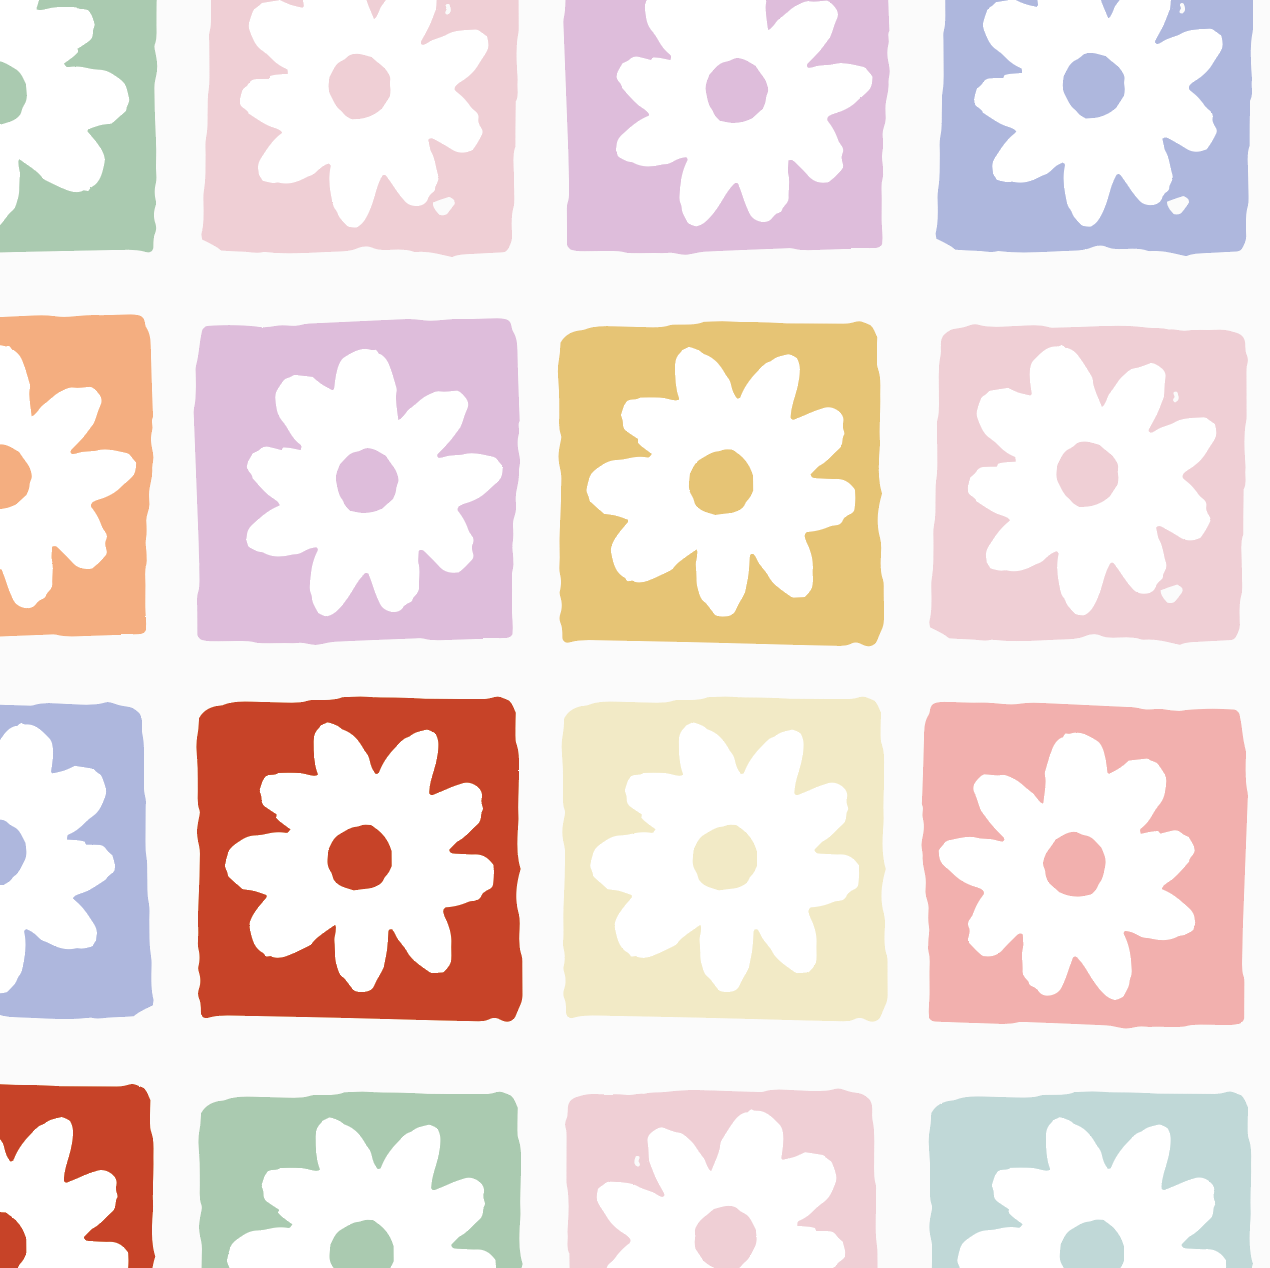 Floral Fun land Repeat Wallpaper Pattern - Munks and Me Wallpaper